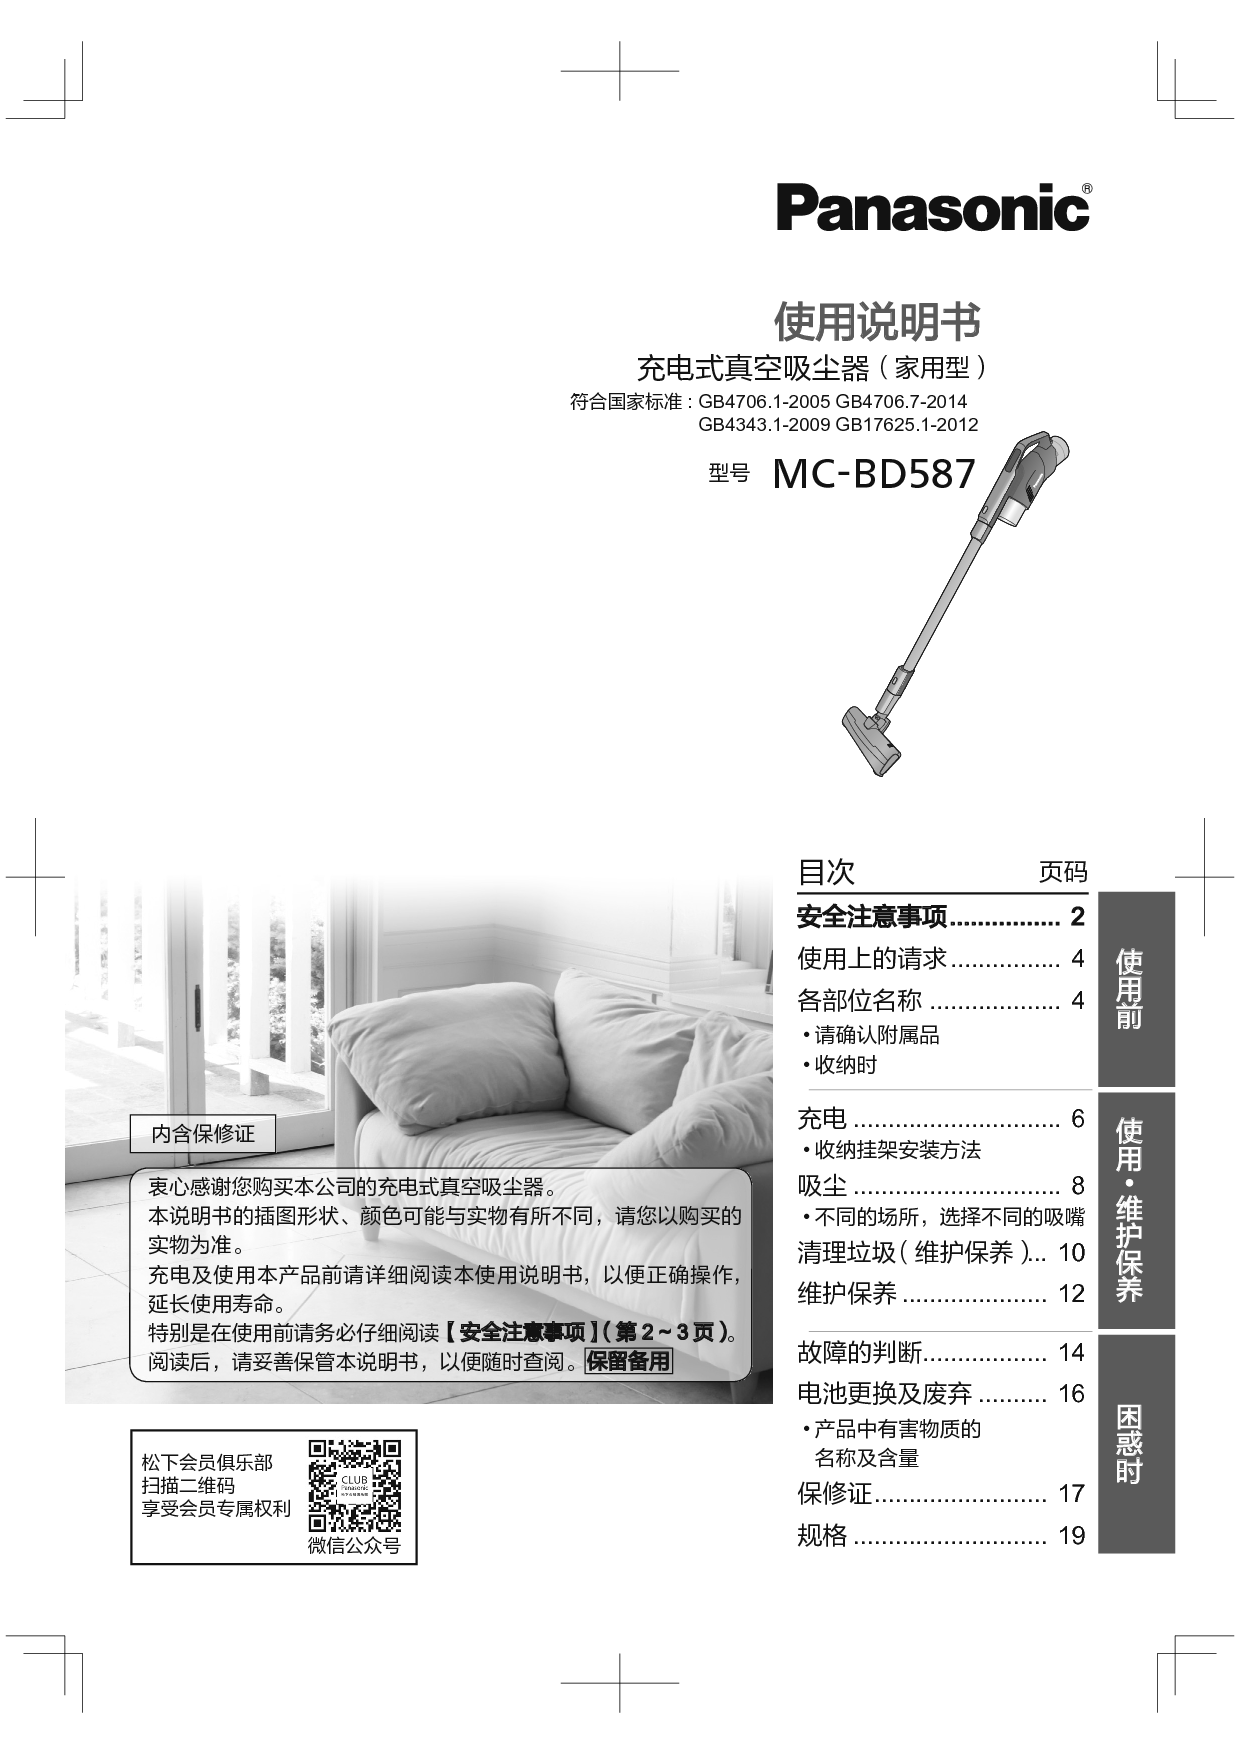 松下 Panasonic MC-BD587 使用说明书 封面